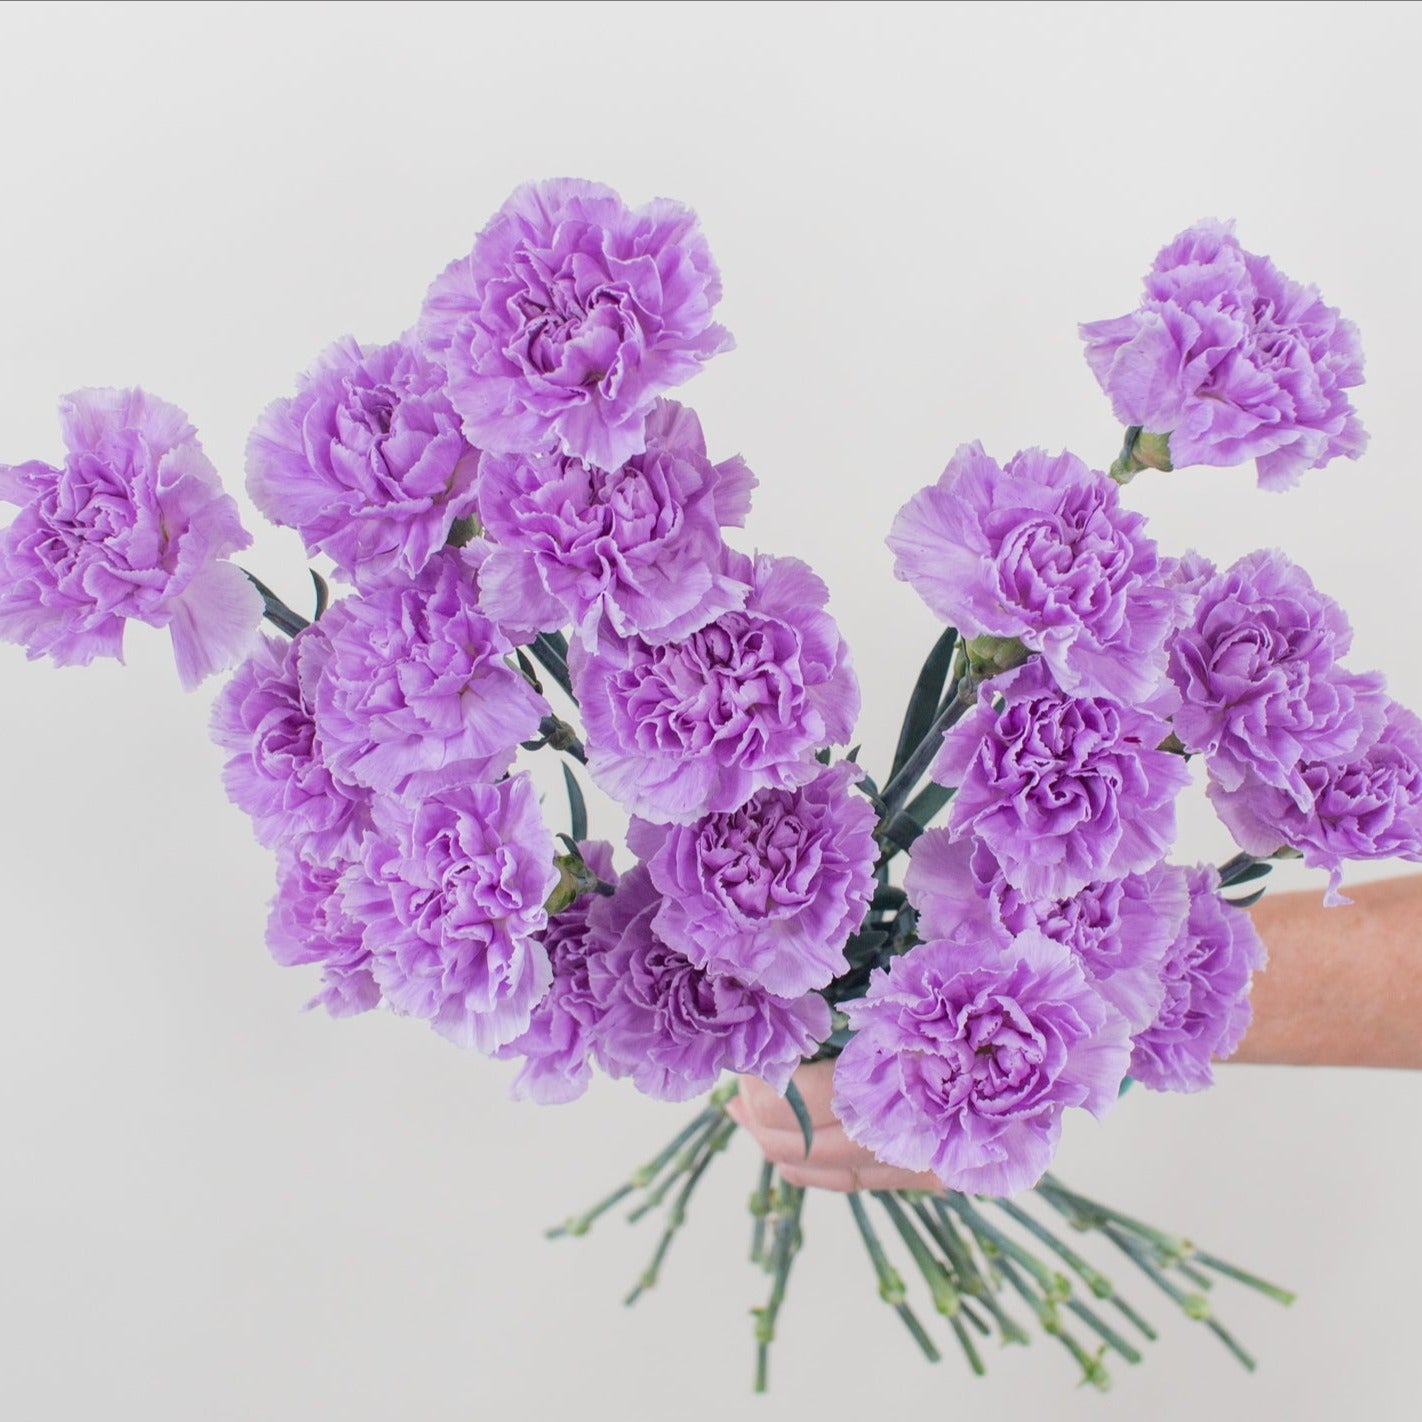 Lavender to medium purple